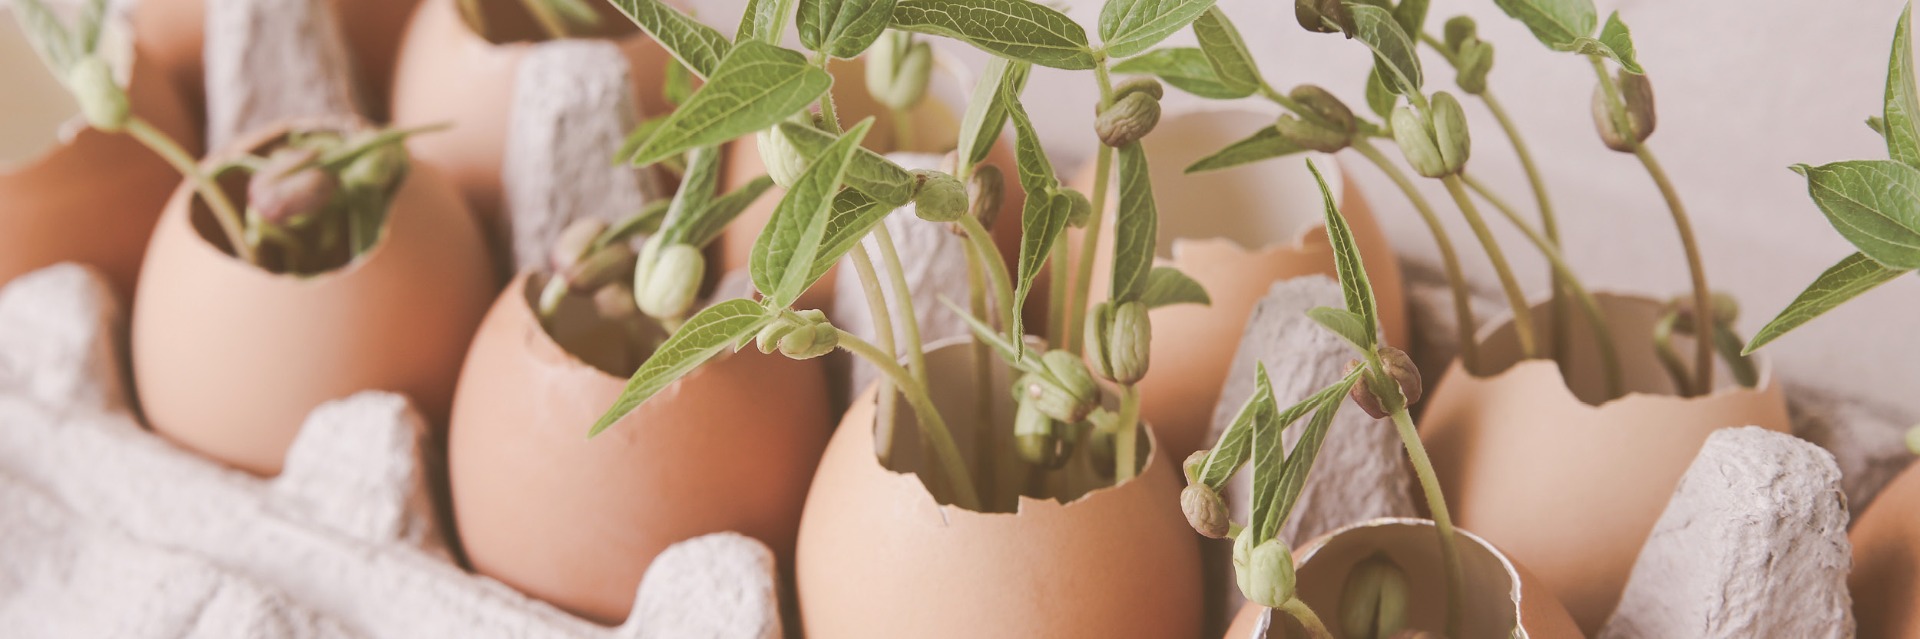 Egg shell seedlings